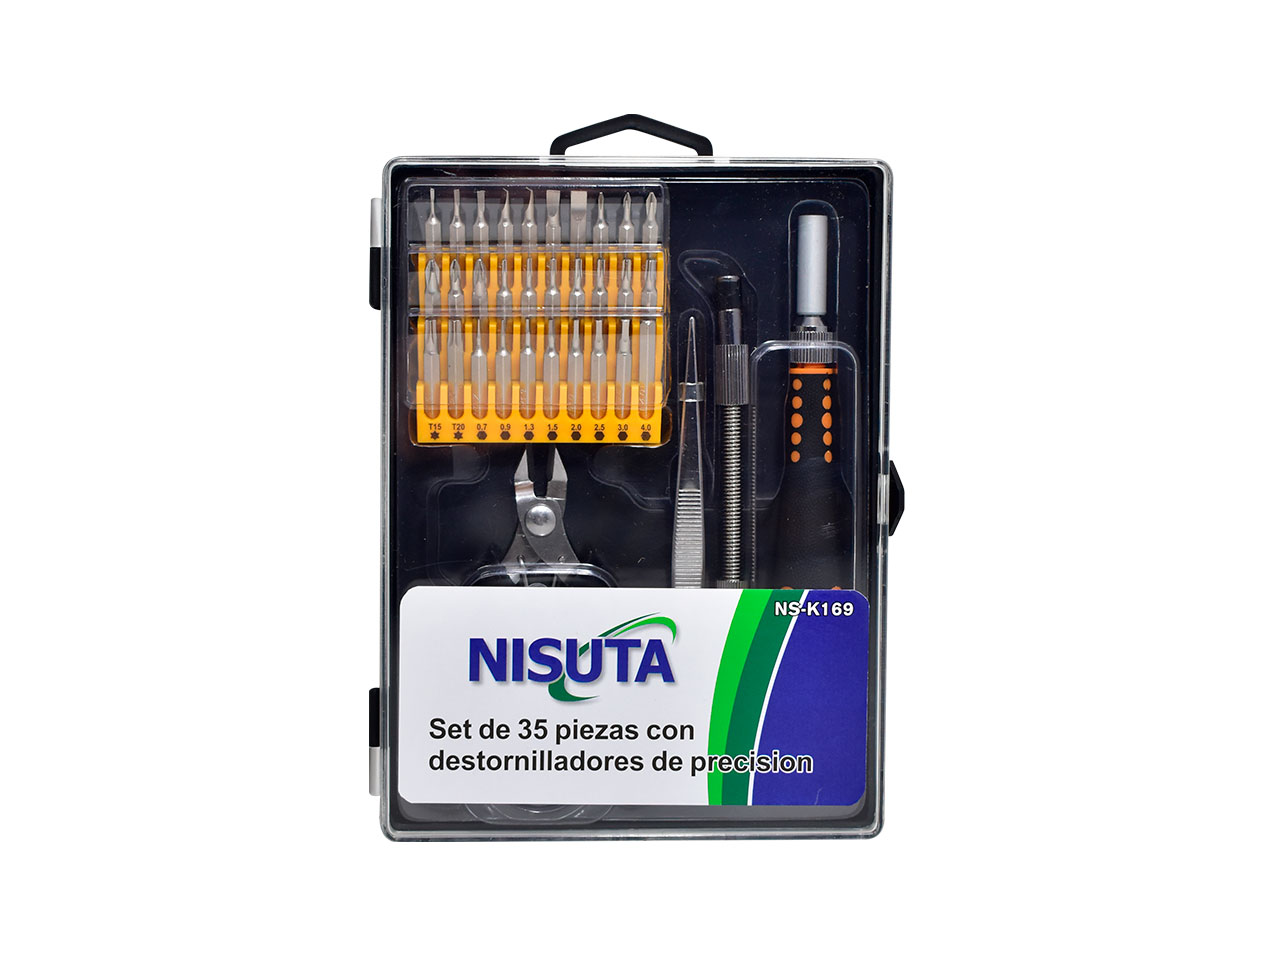 Nisuta - NSK169